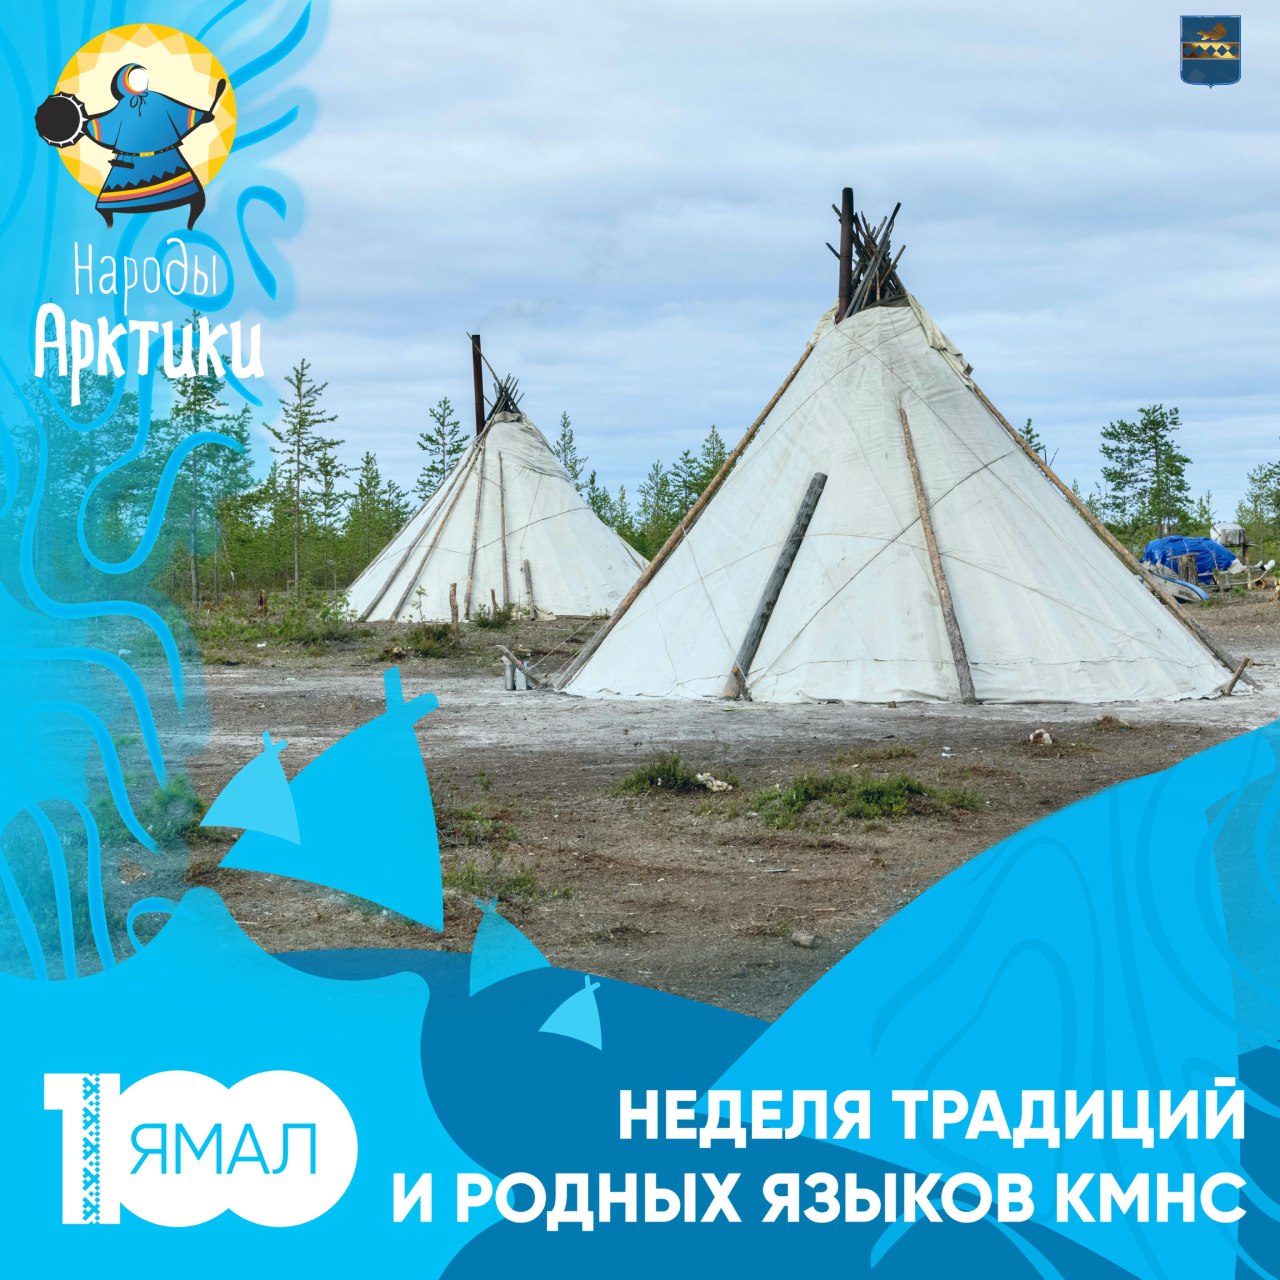 5 августа начинается Неделя традиций и родных языков КМНС на Ямале и фестиваль «Край земли» в Ноябрьске